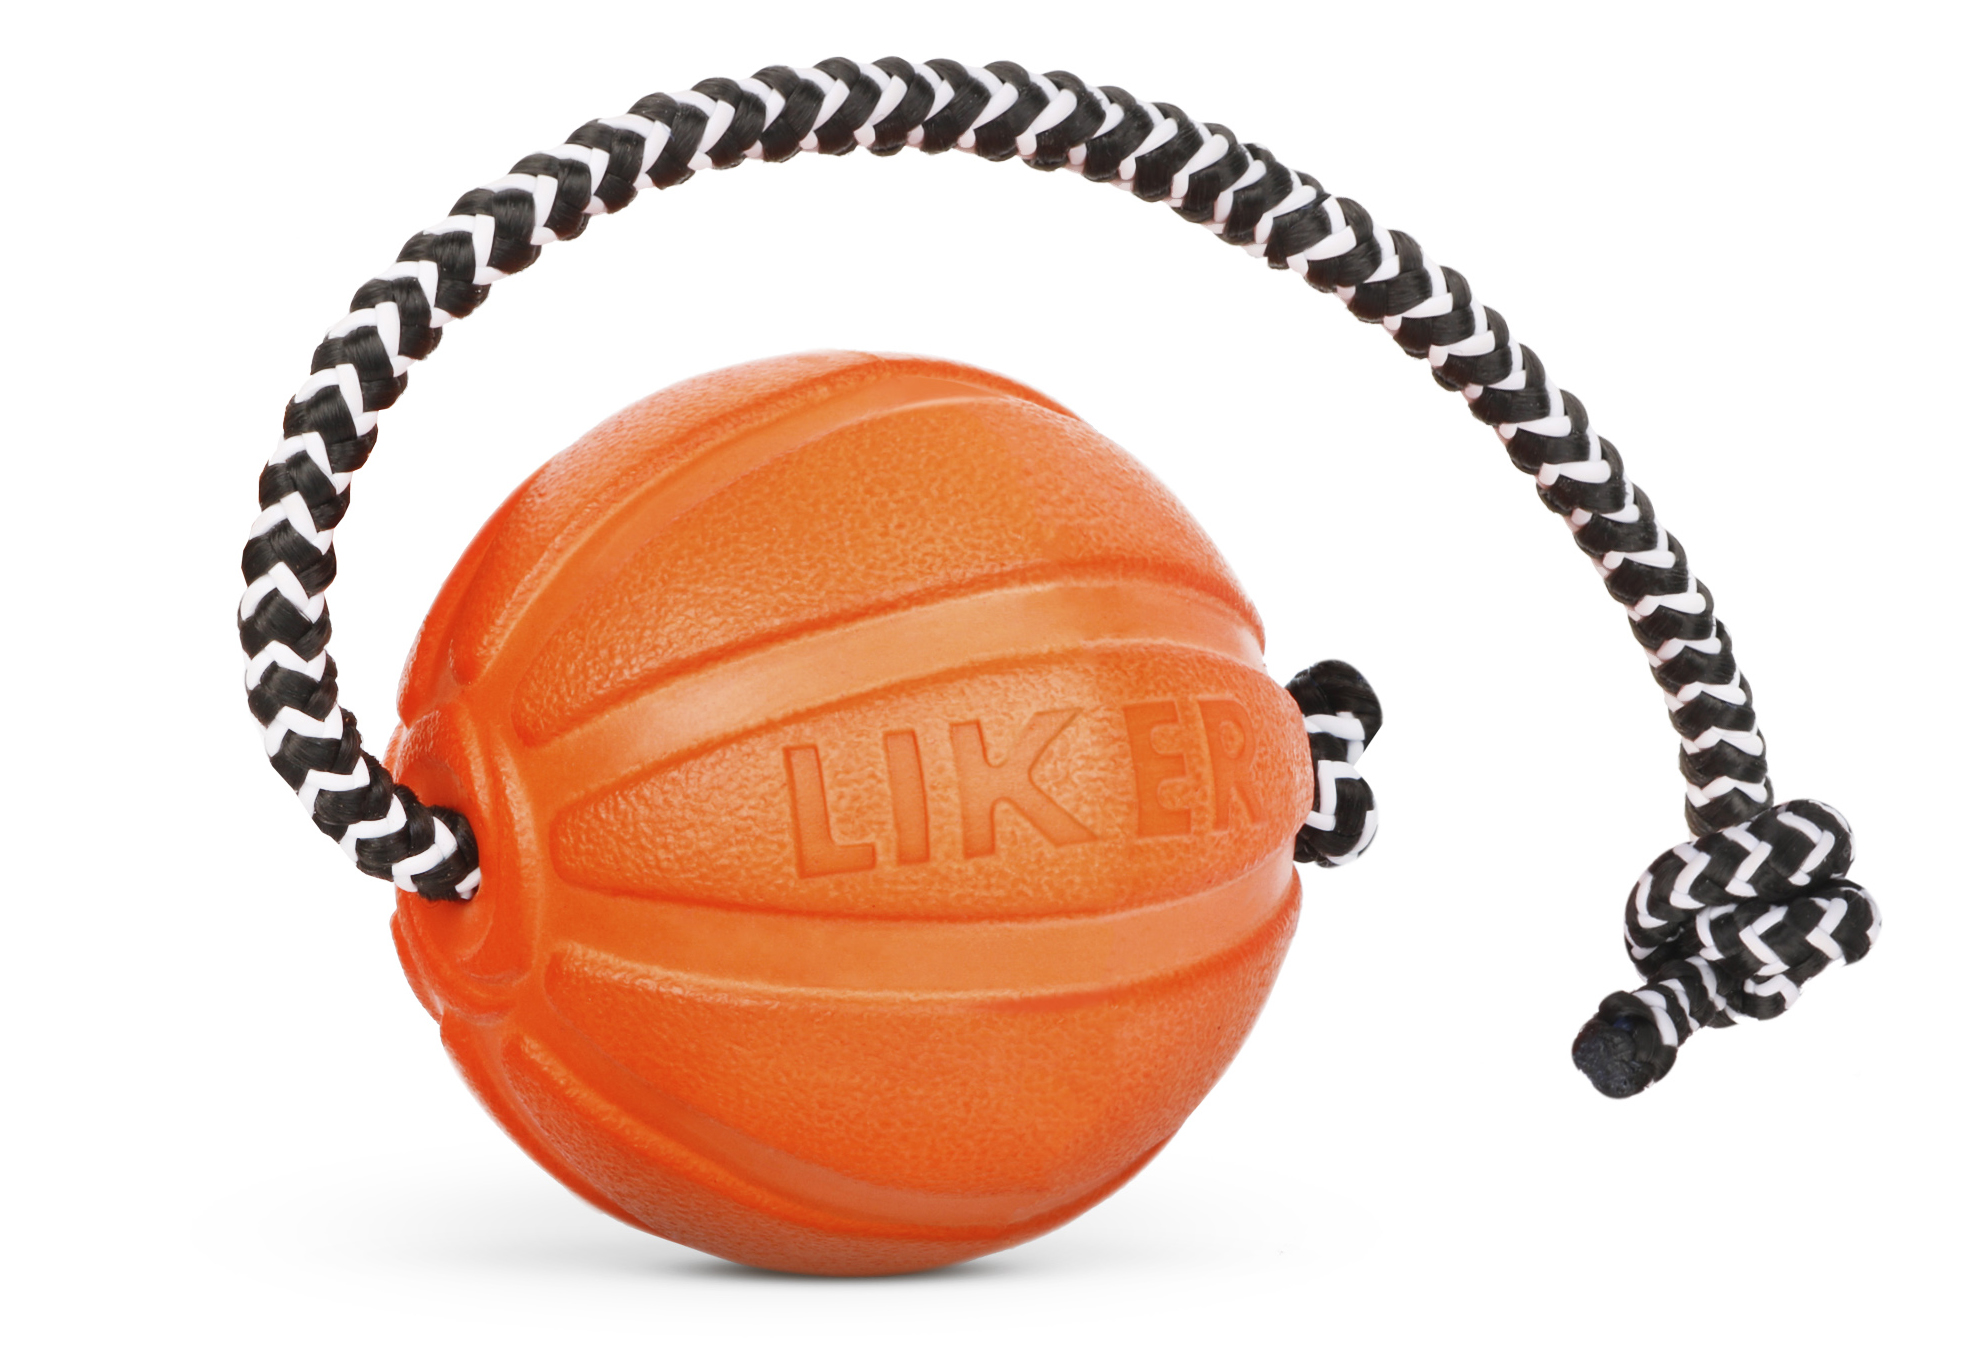 Мячик со шнуром для щенков и собак мелких пород LIKER Cord, оранжевый, 5 см